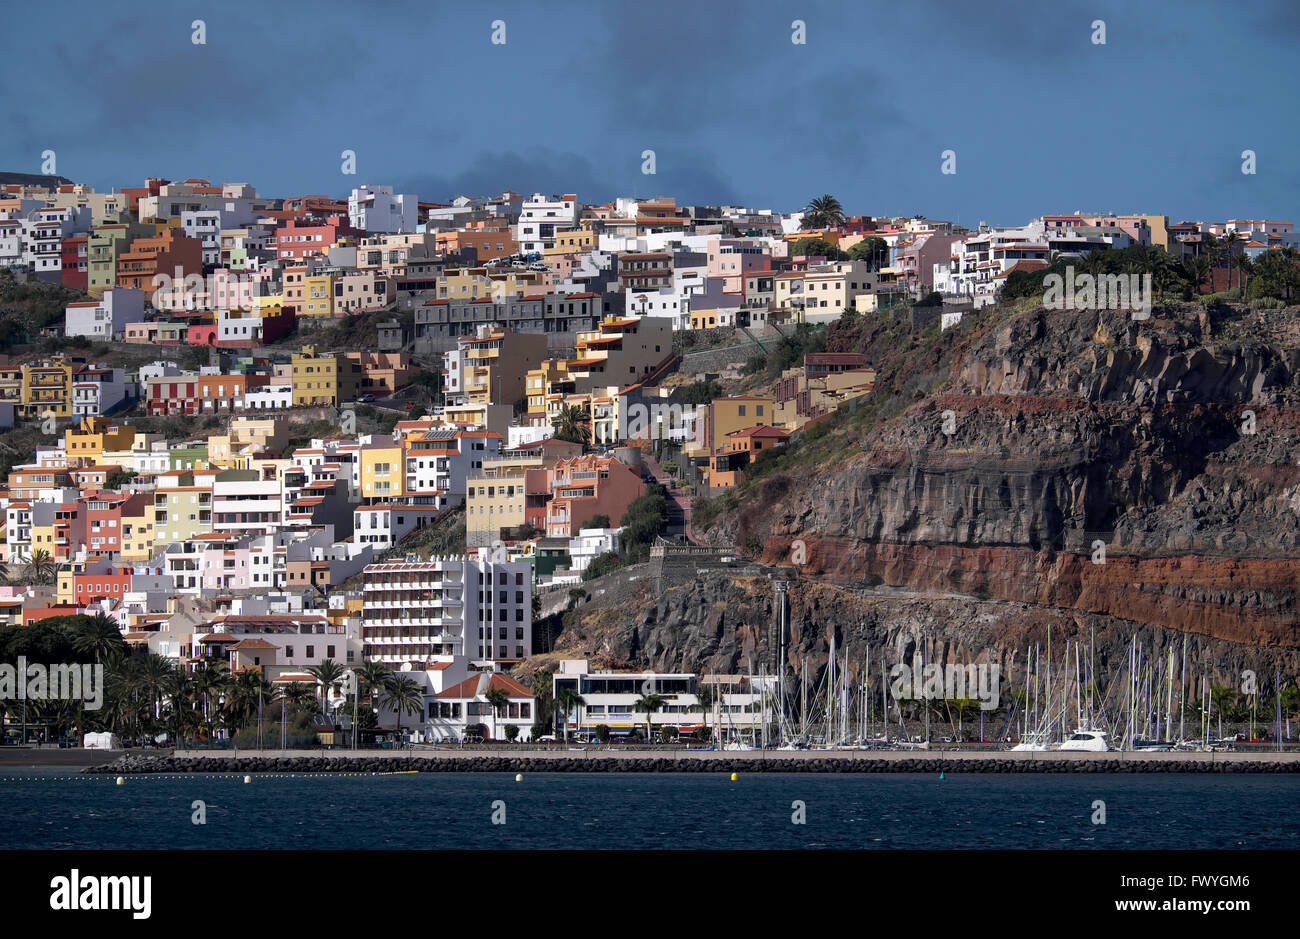 San Sebastian, La Gomera, Canary Islands, Spain Stock Photo